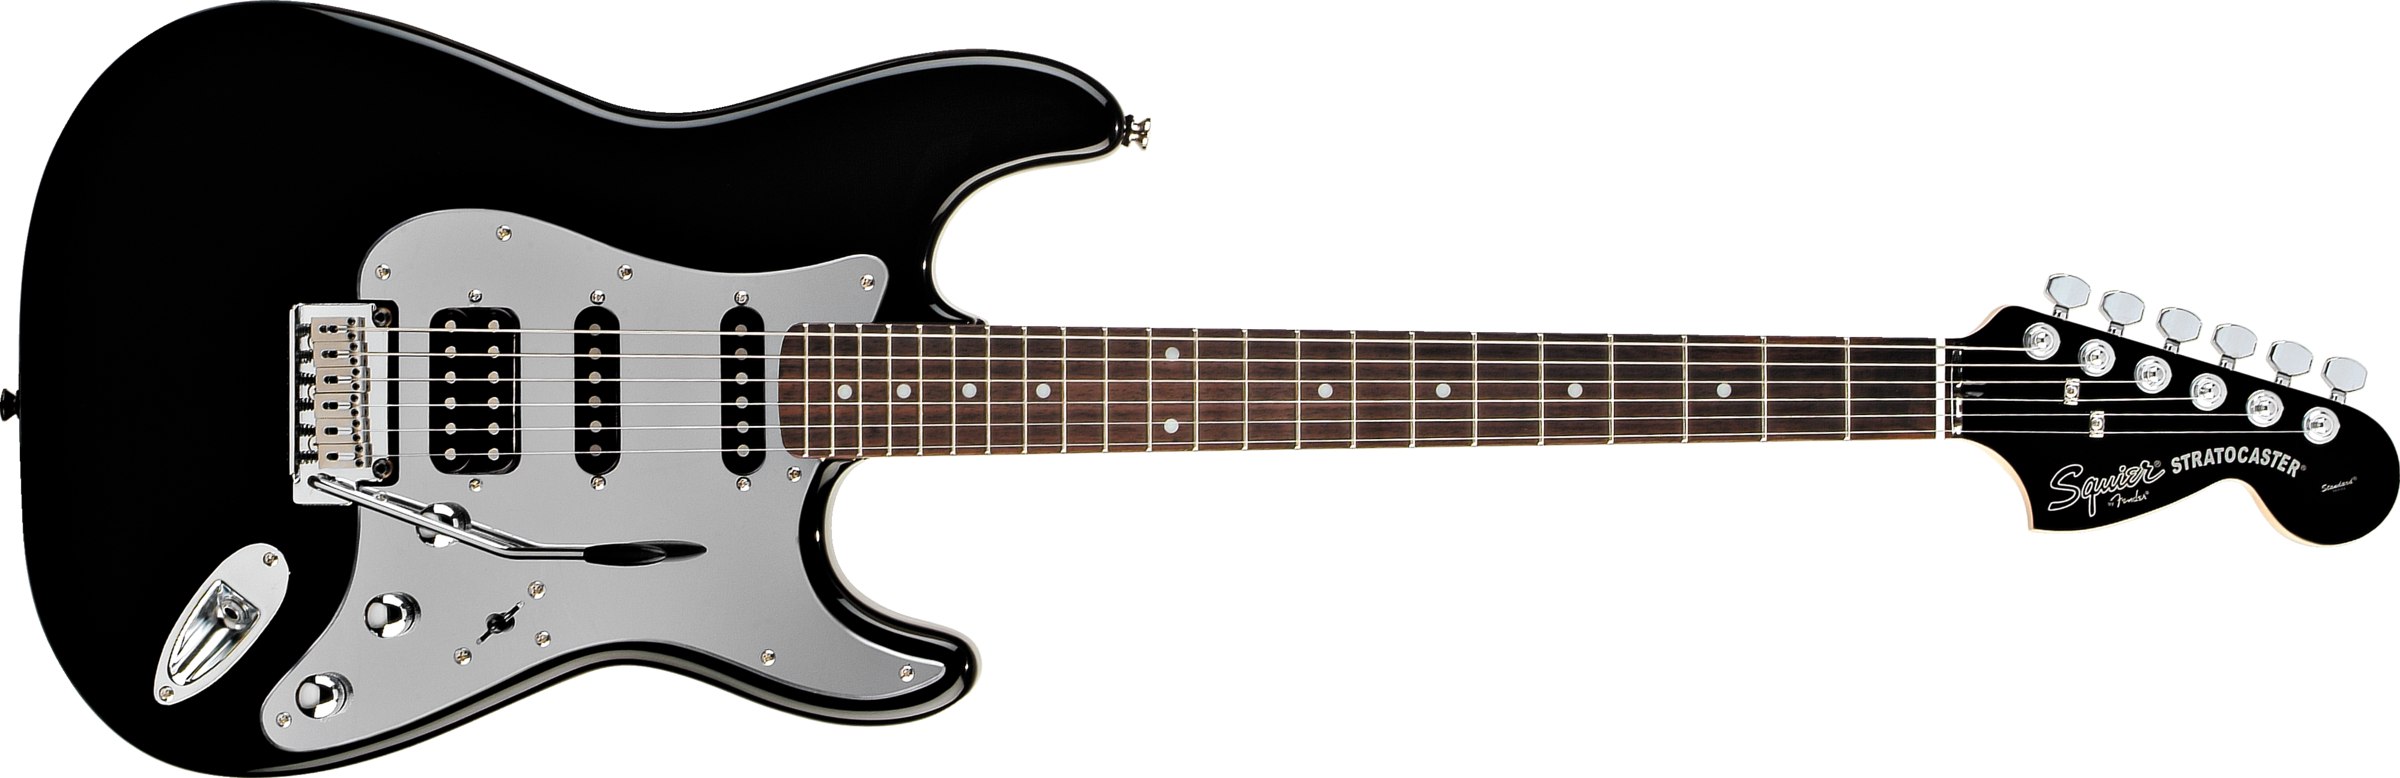 E-Guitar PNG Scarica limmagine